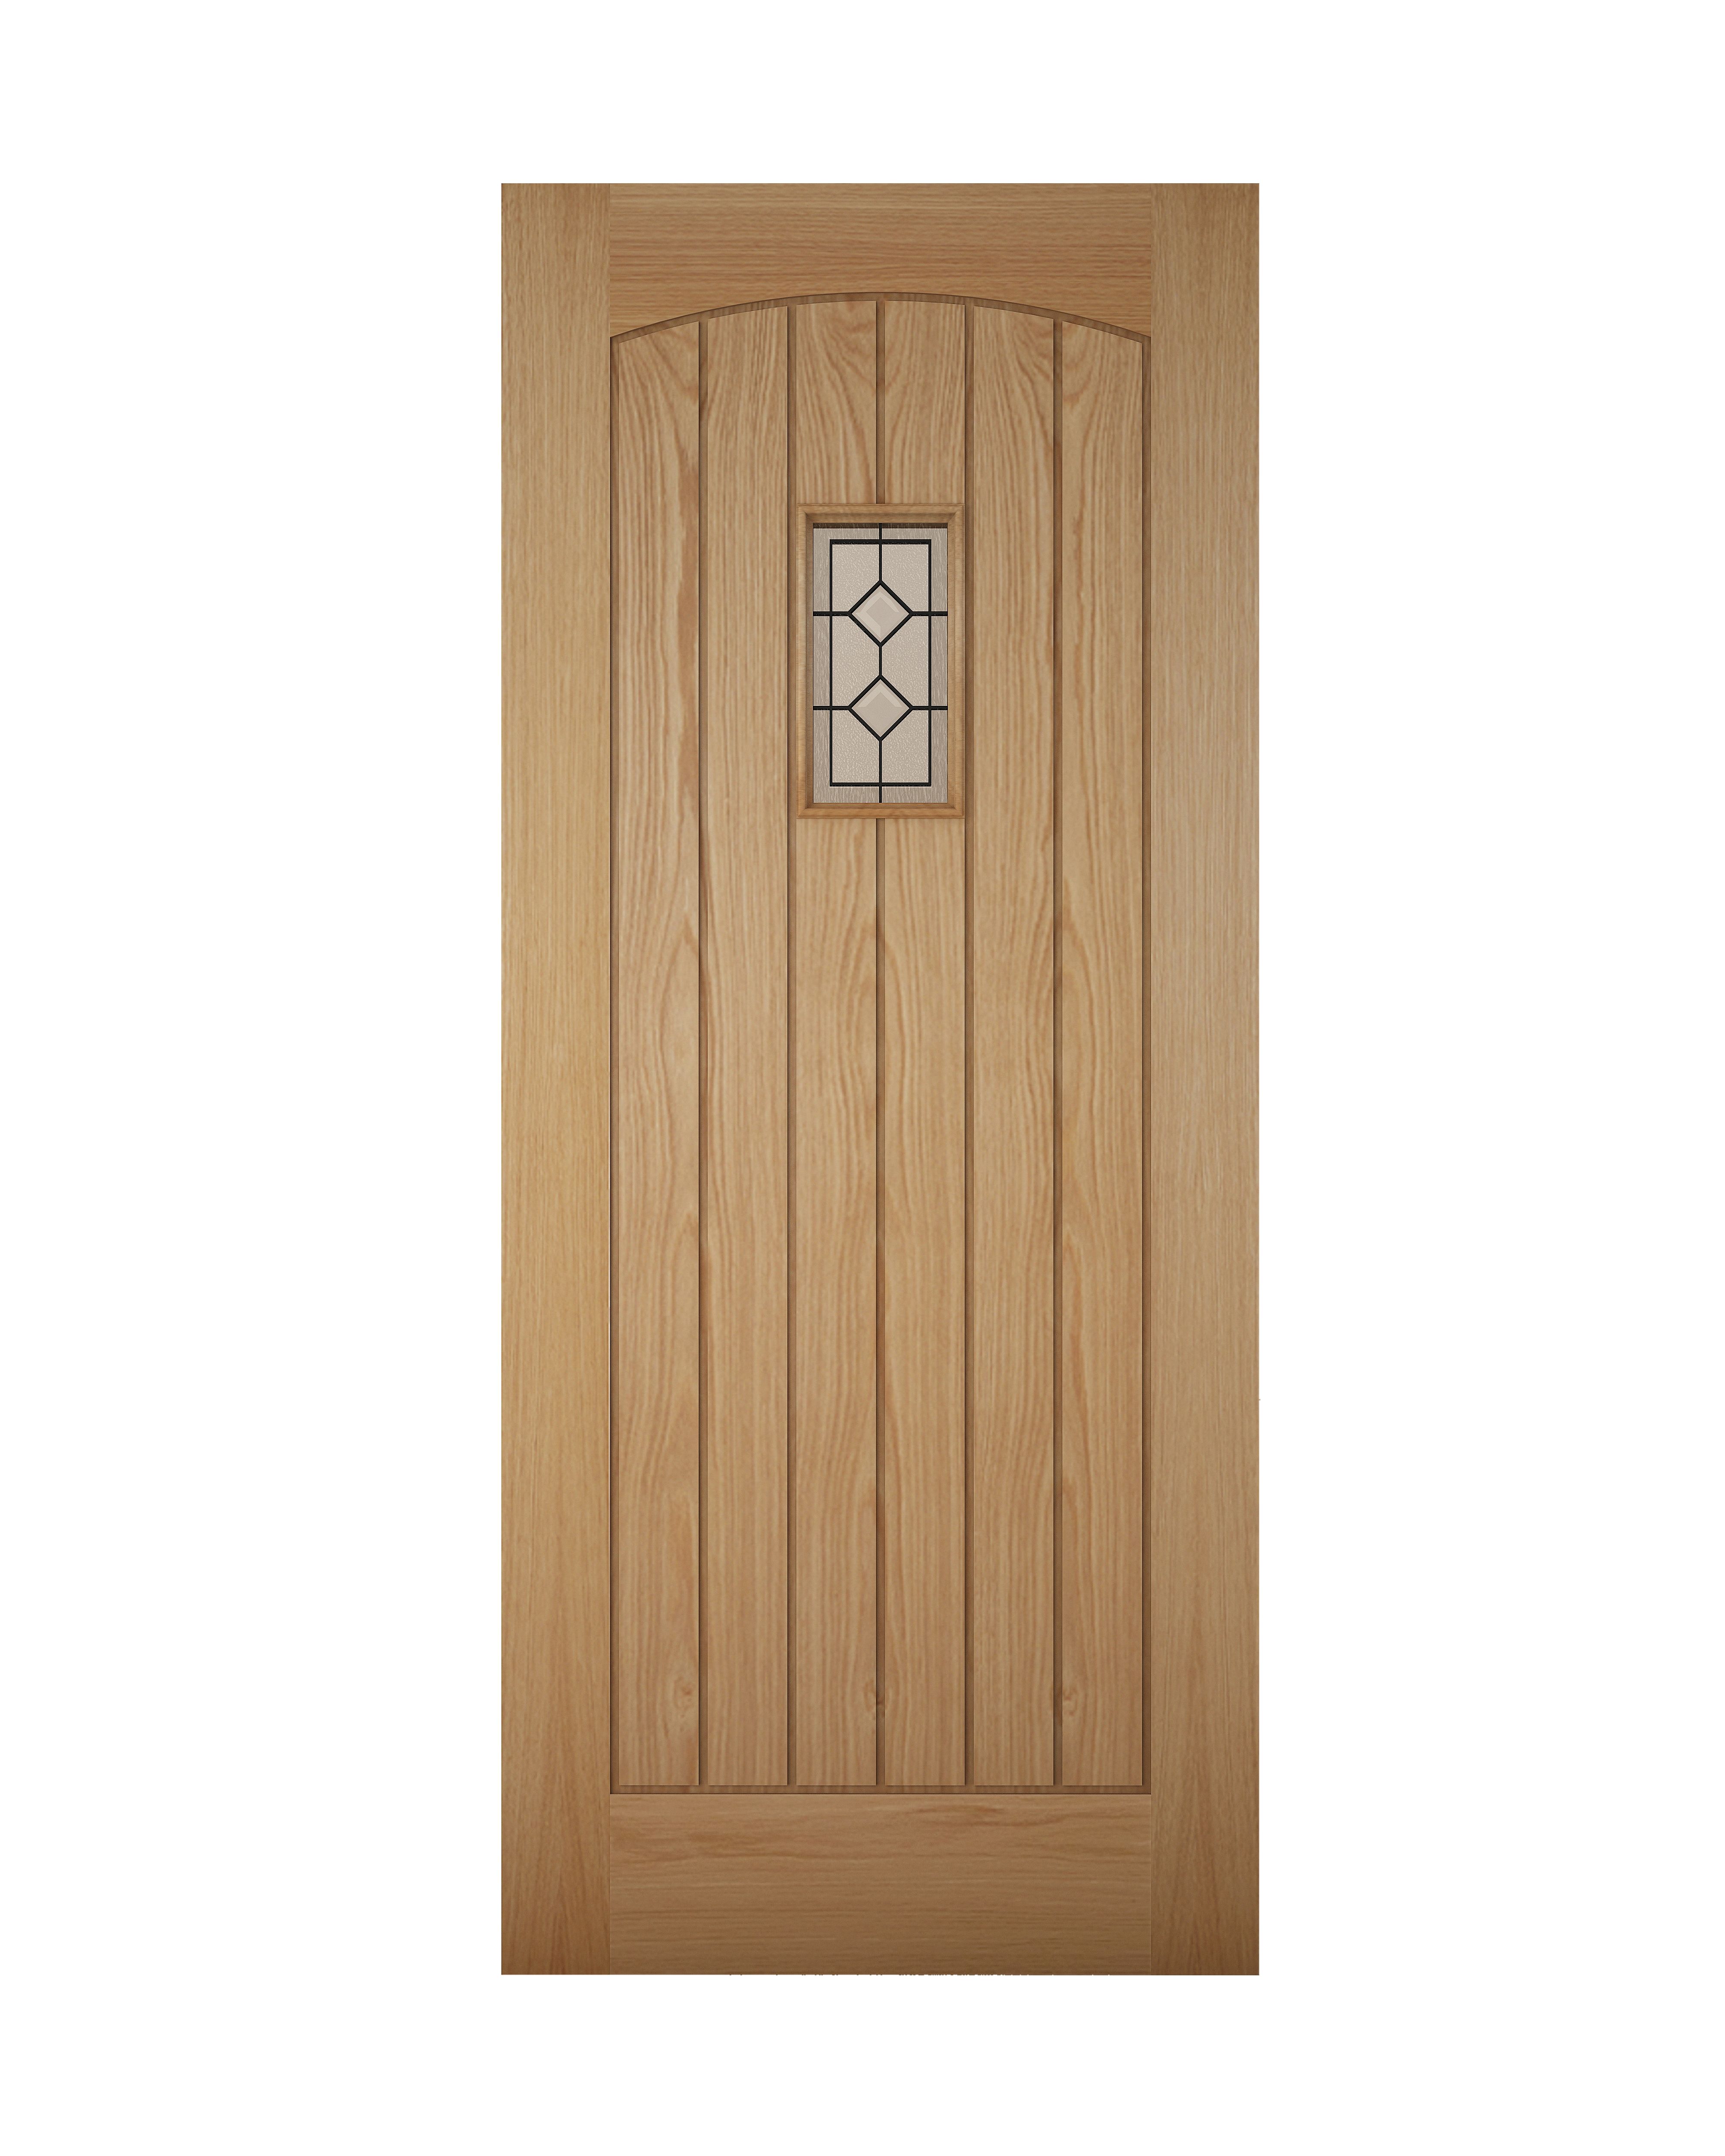 Geom Glazed Cottage White oak veneer Left & RHed Front door, (H)1981mm (W)762mm